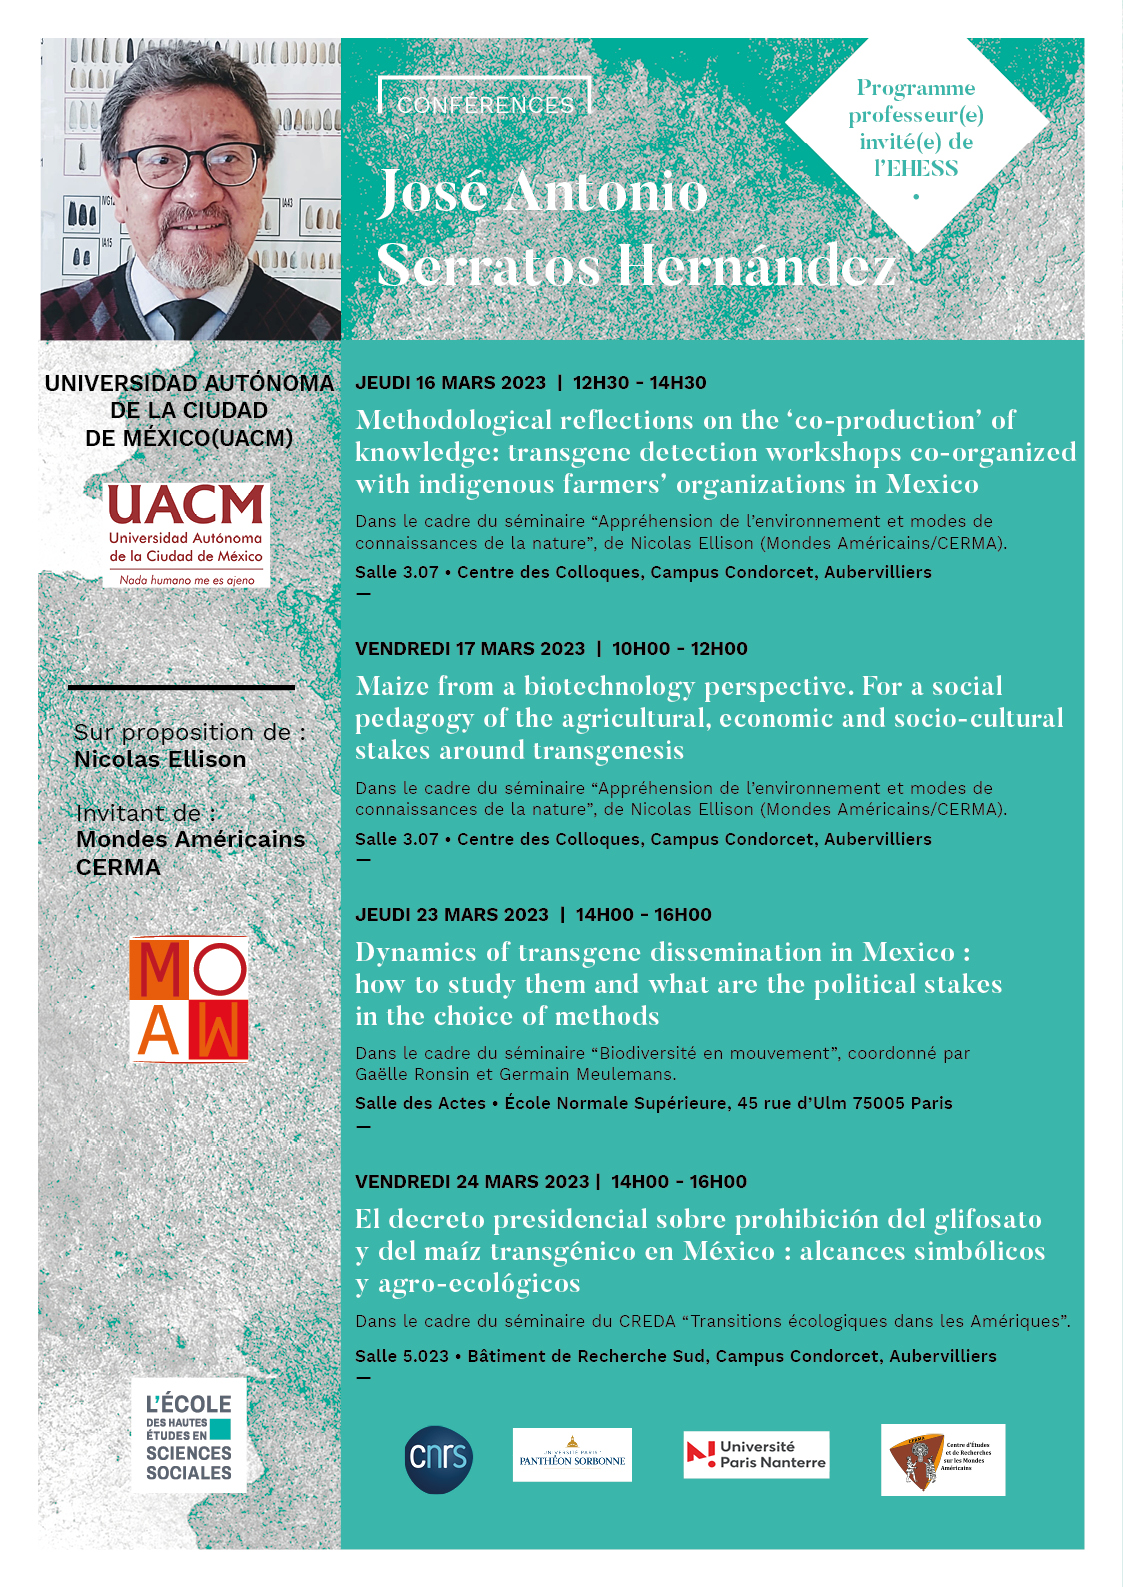 Conférences de José Antonio Serratos Hernández, chercheur à l’Université Autonome de la ville de México (UACM)